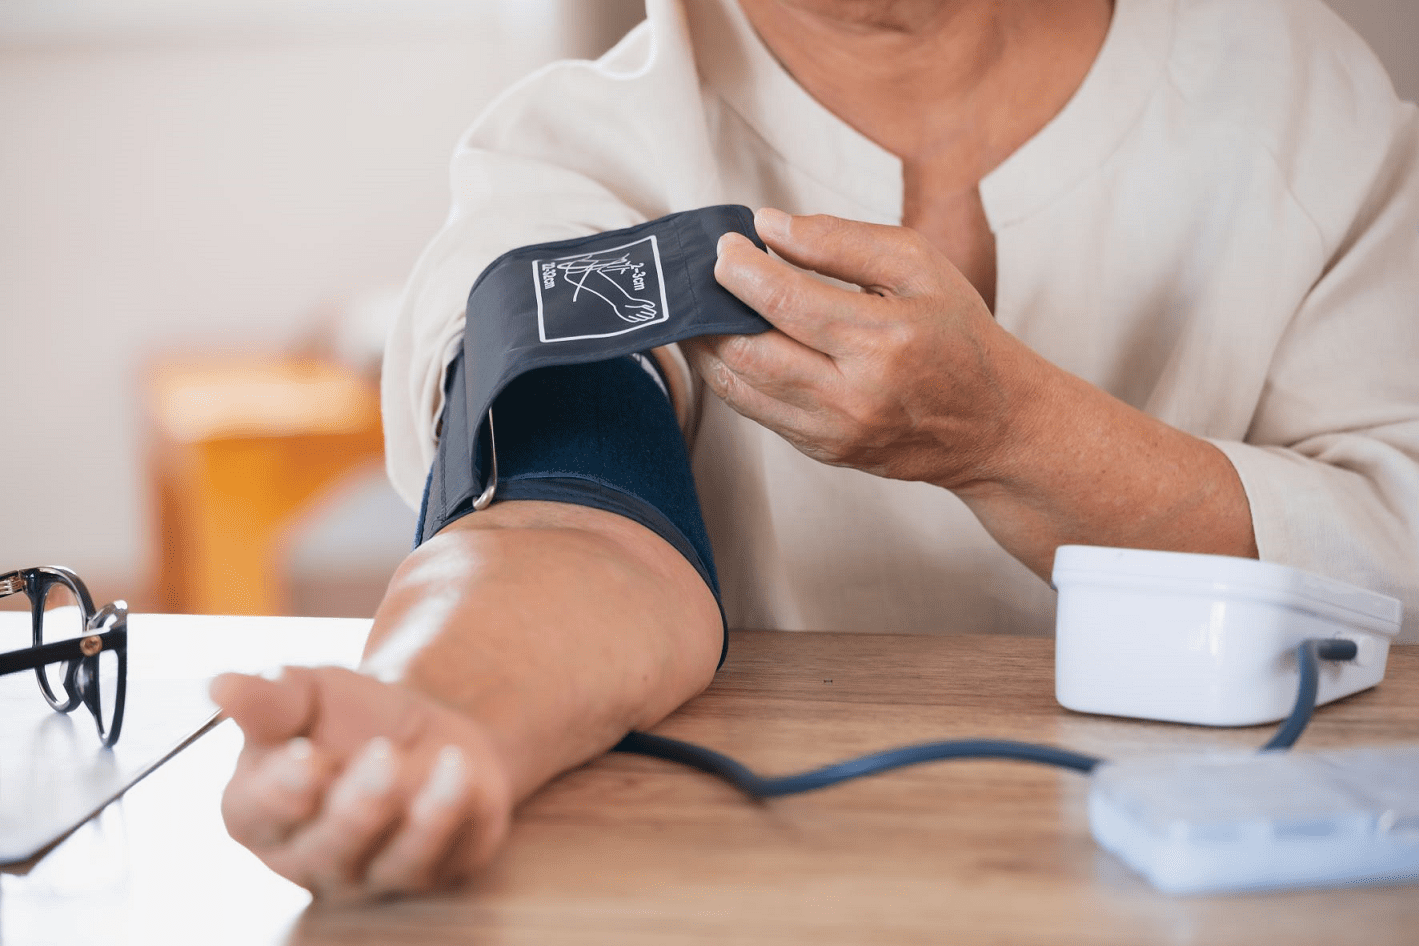 Digital uppföljning förbättrar blodtrycket hos hjärtpatienter